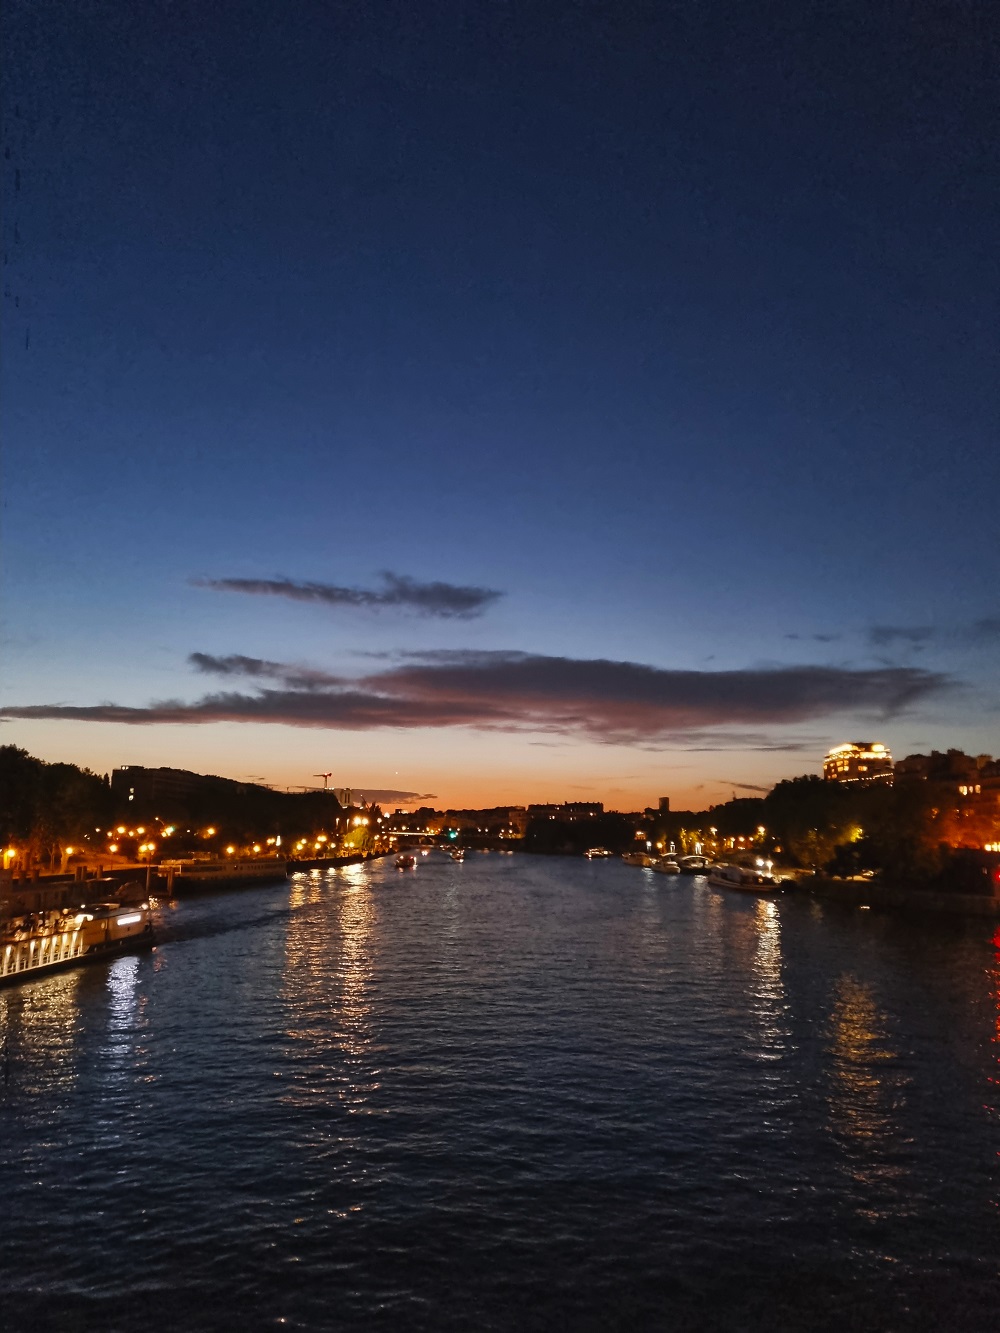 The Seine River